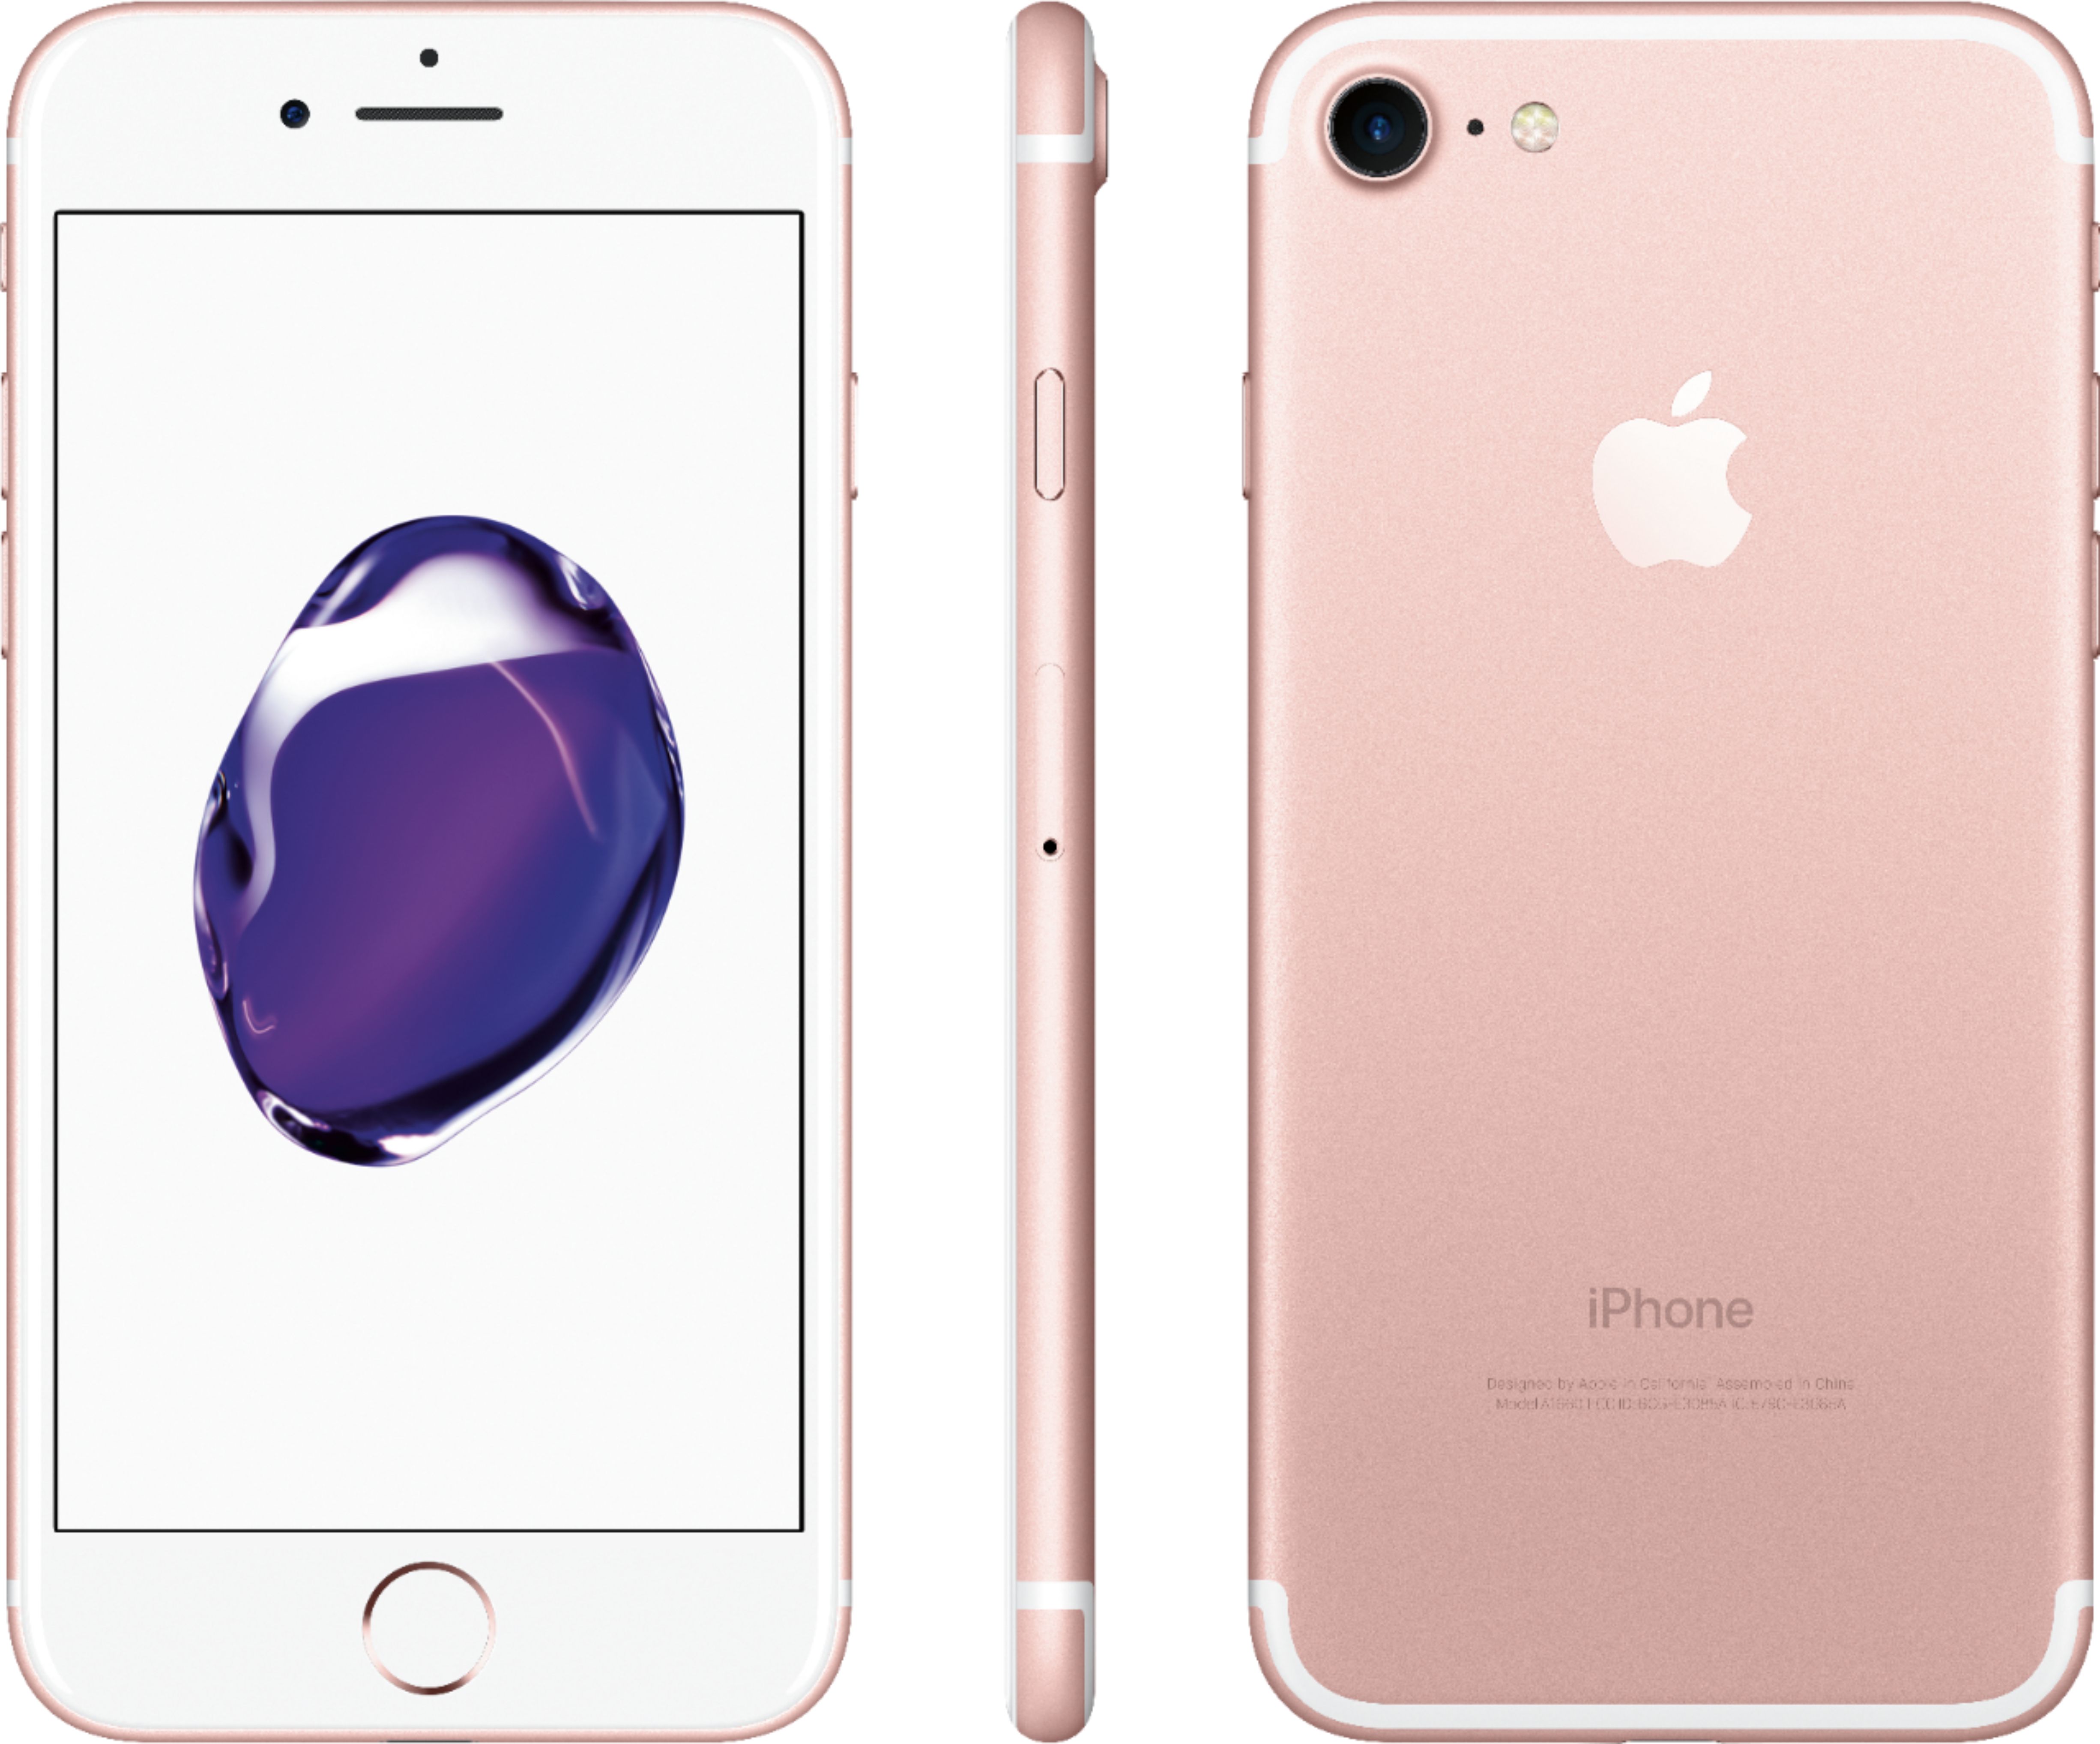 スマートフォン/携帯電話 スマートフォン本体 Best Buy: Apple iPhone 7 32GB Rose Gold (AT&T) MN8K2LL/A